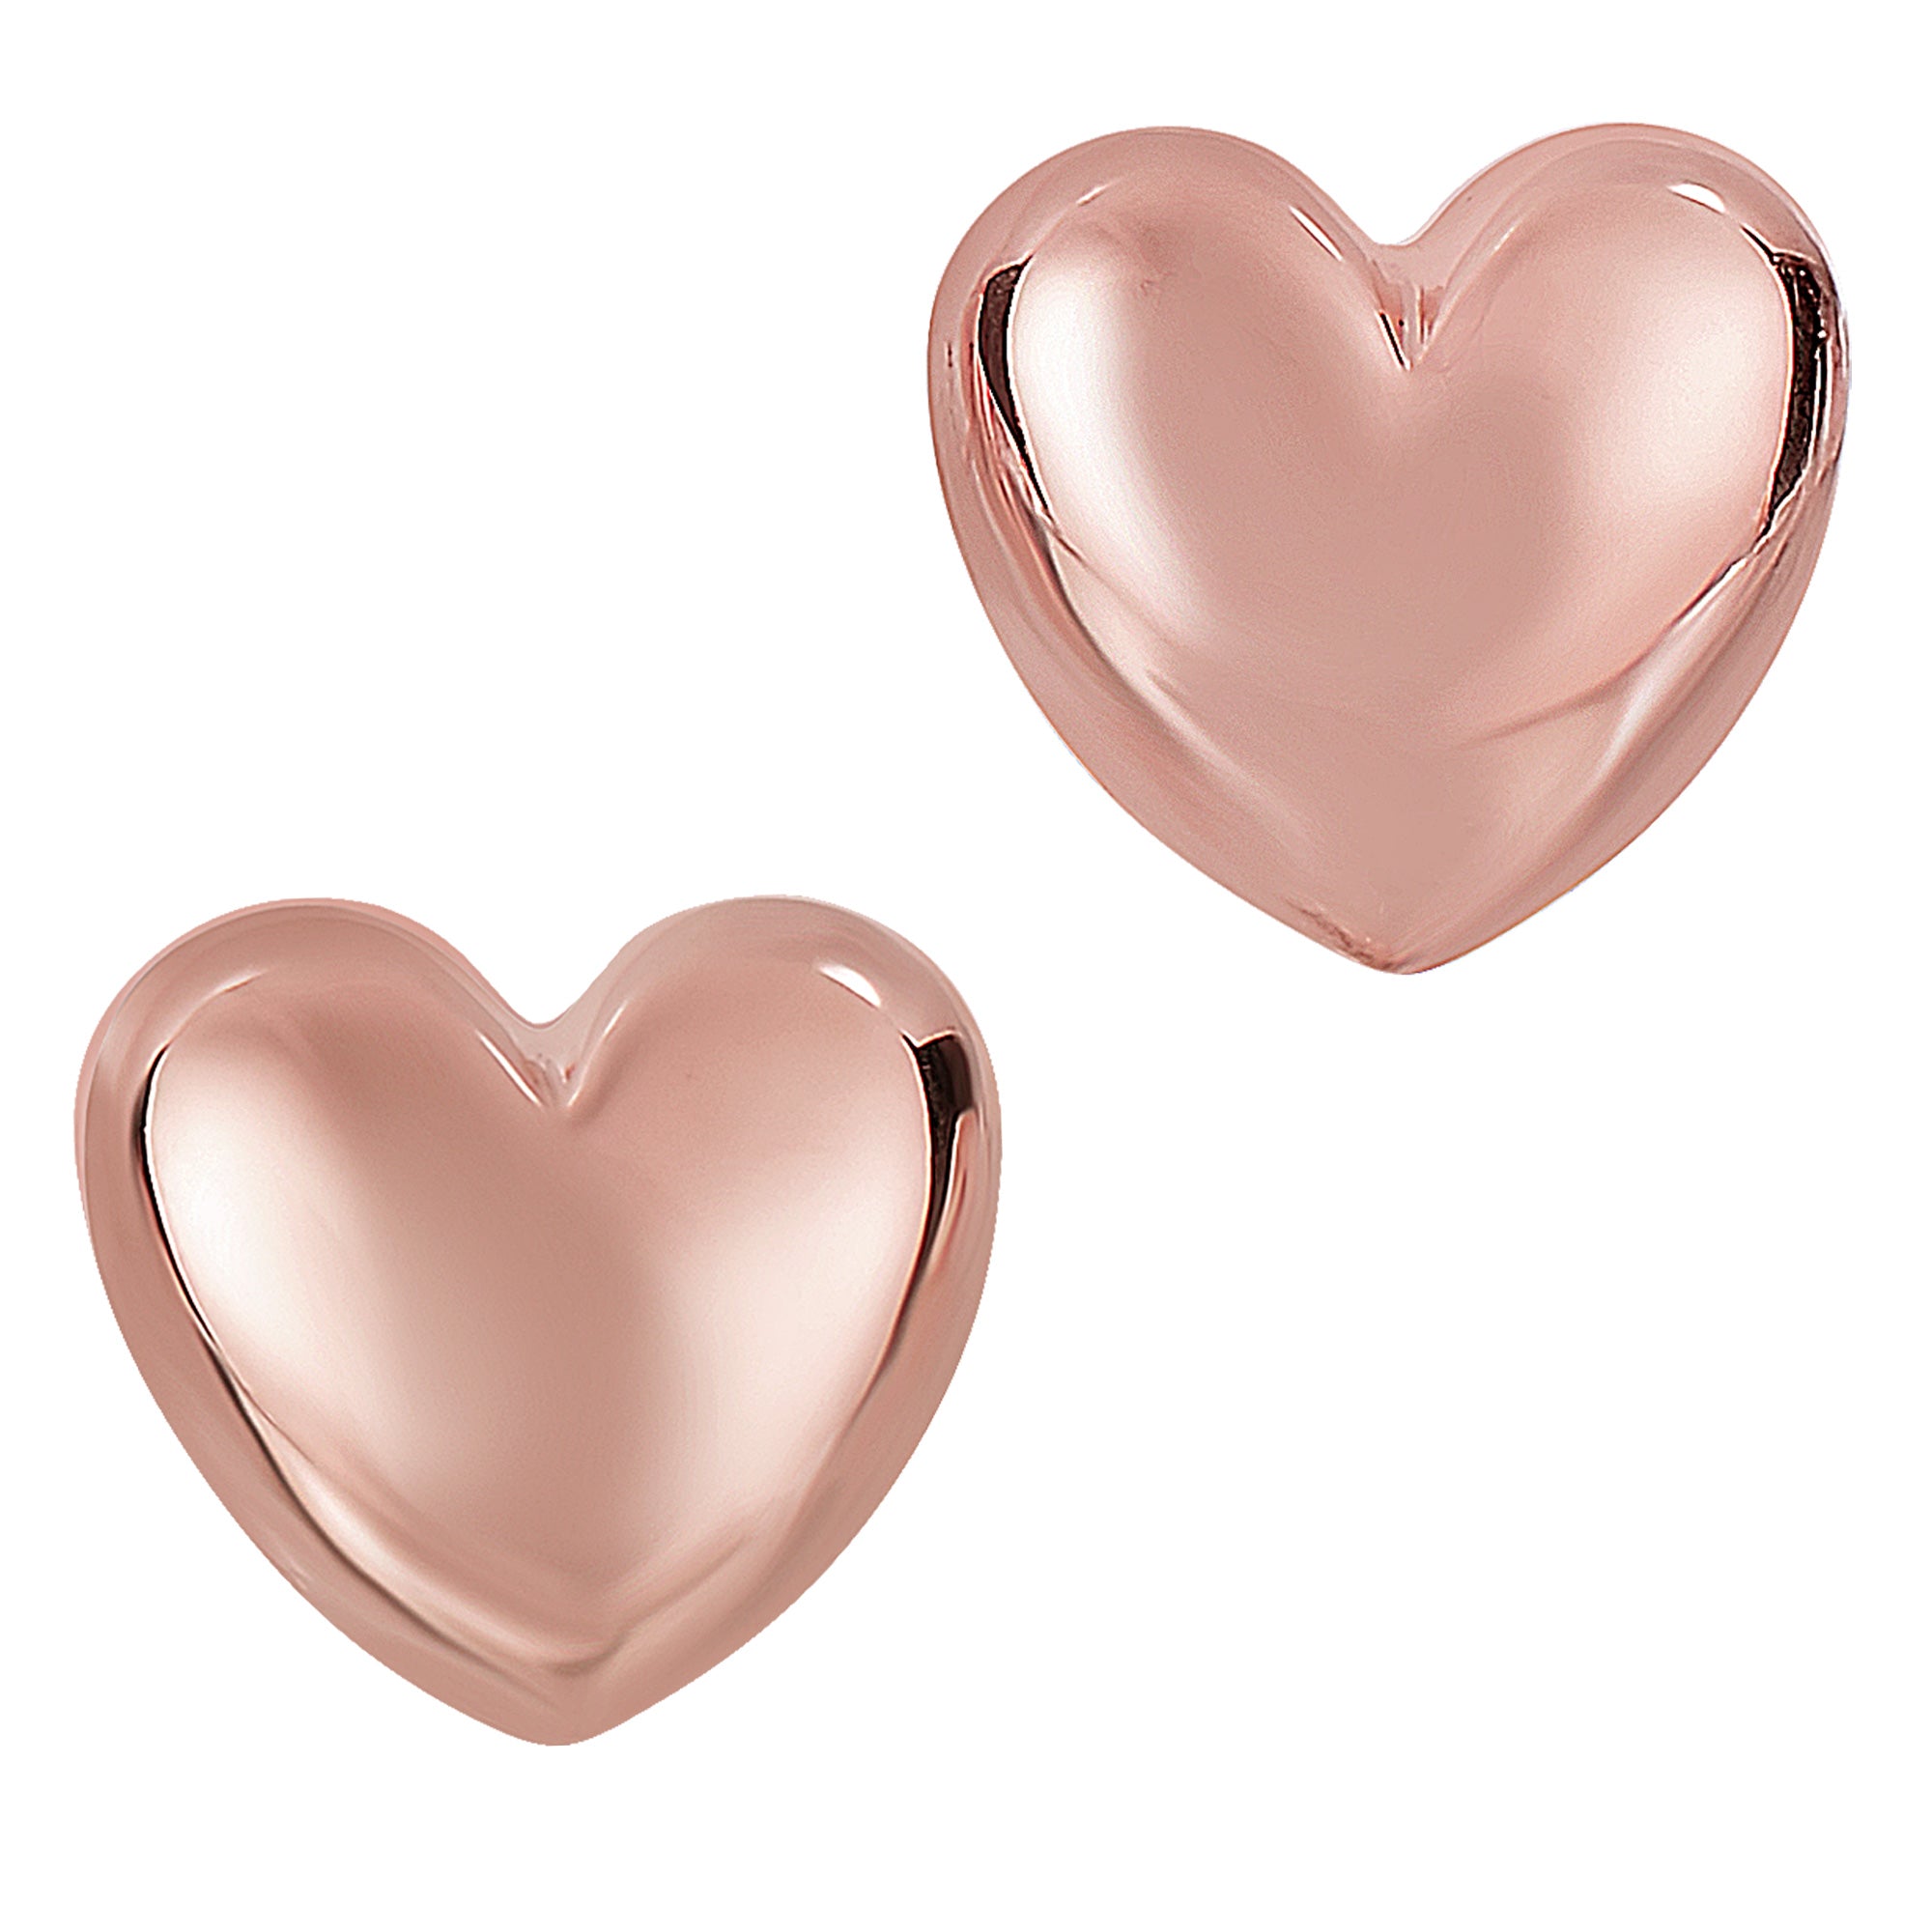 14 k guld glänsande puff hjärtformade örhängen, 10 x 11 mm fina designersmycken för män och kvinnor